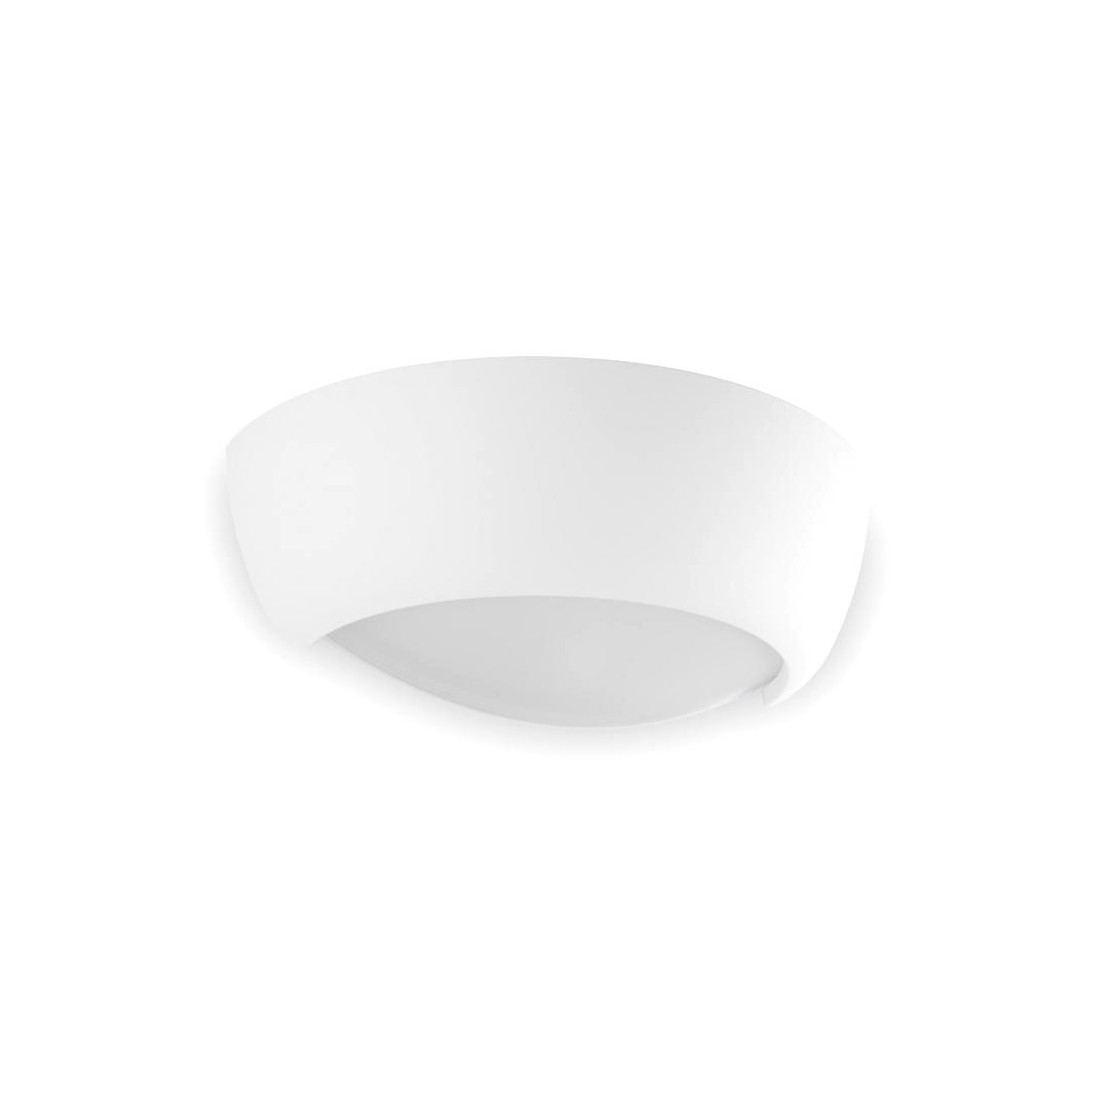 Applique BF-8215 41 E27 LED gesso bianco verniciabile biemissione lampada parete vaschetta interno IP20